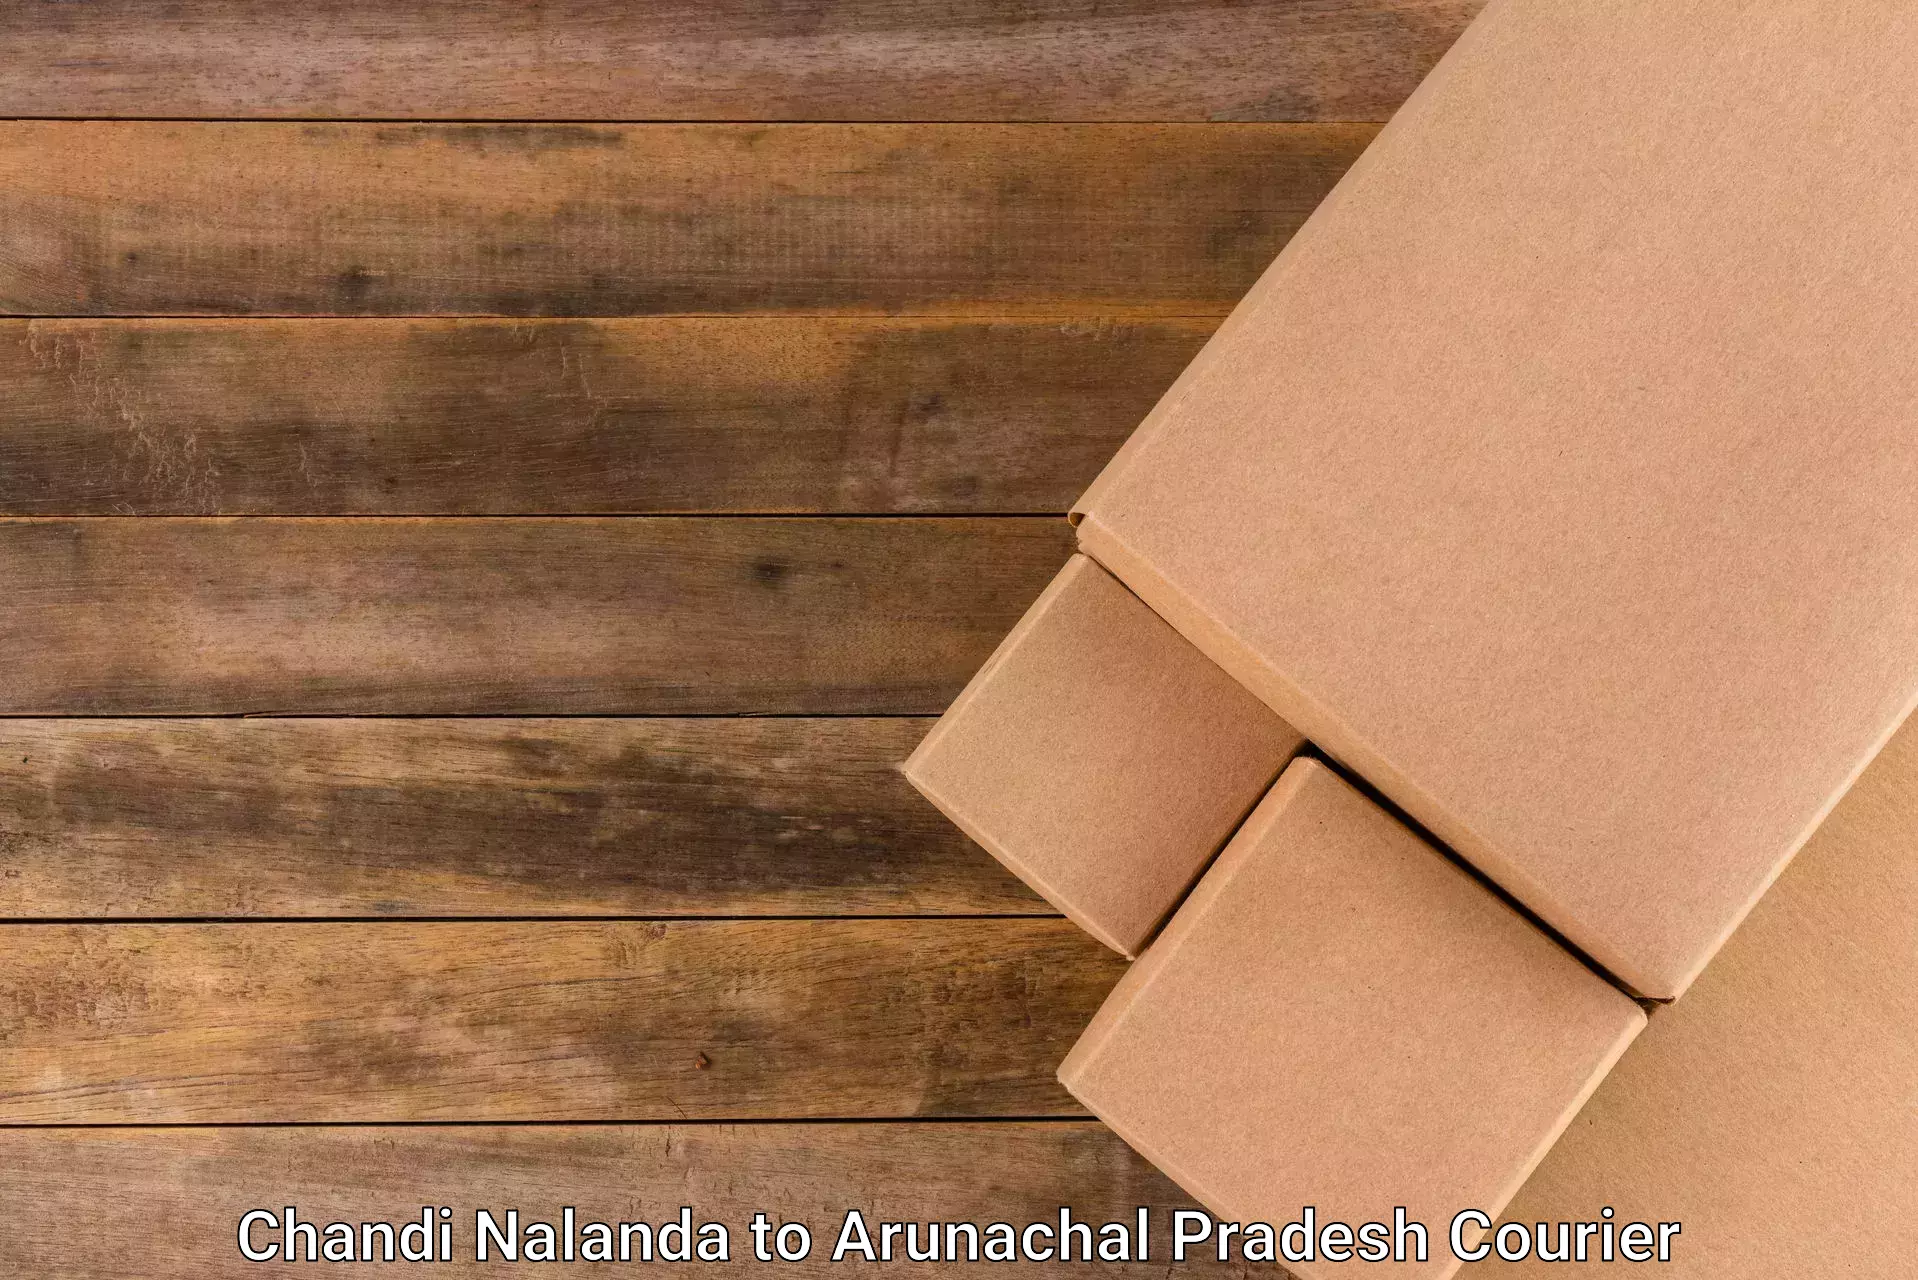 International courier rates Chandi Nalanda to Arunachal Pradesh